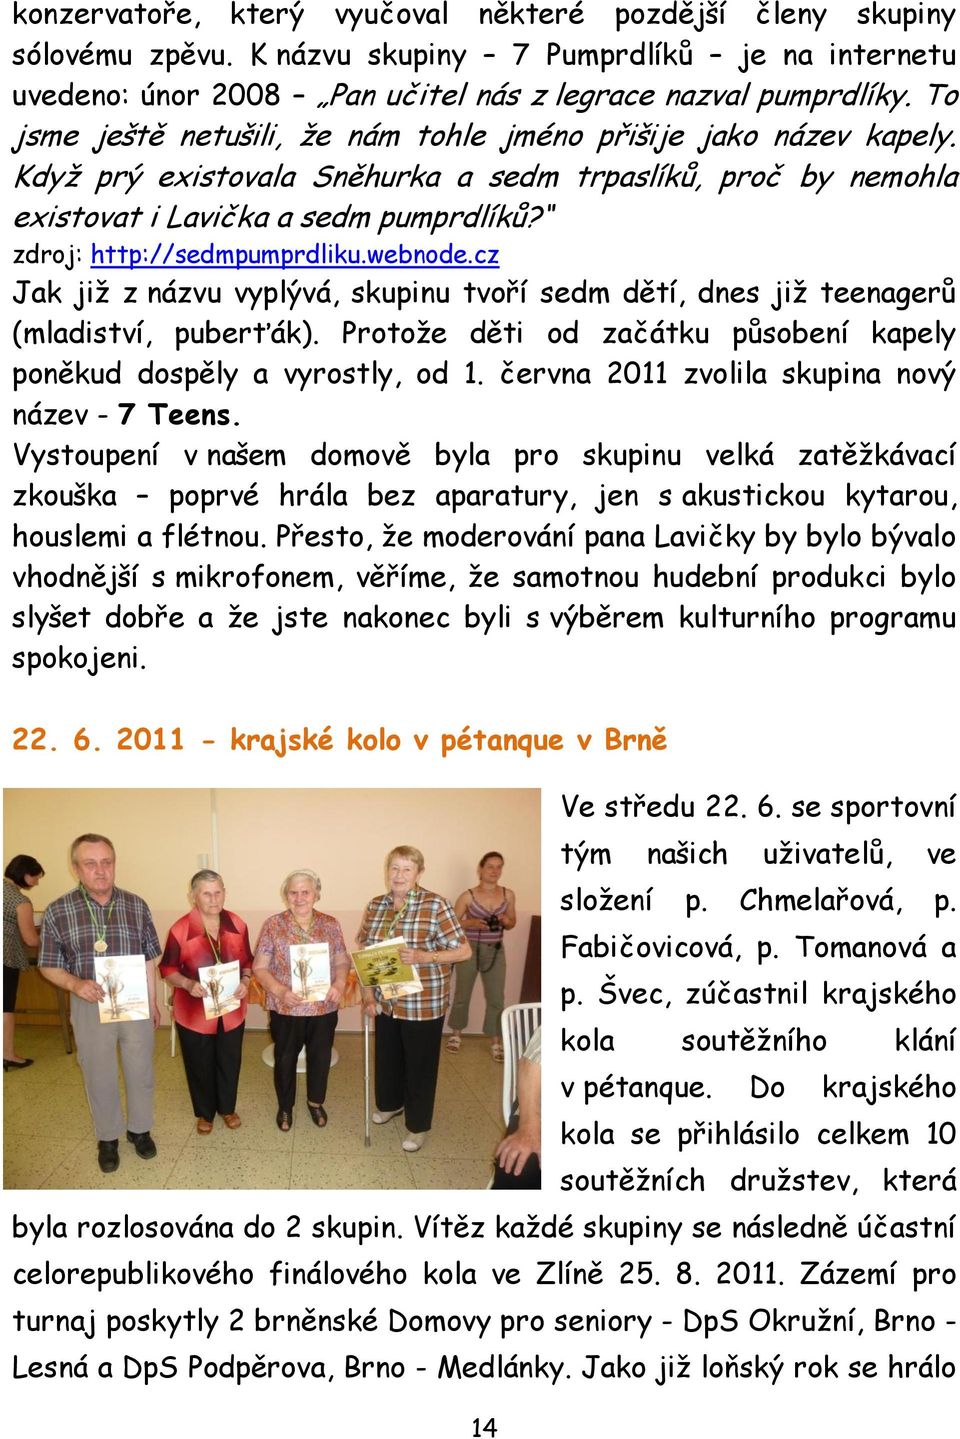 zdroj: http://sedmpumprdliku.webnode.cz Jak jiţ z názvu vyplývá, skupinu tvoří sedm dětí, dnes jiţ teenagerů (mladiství, puberťák).